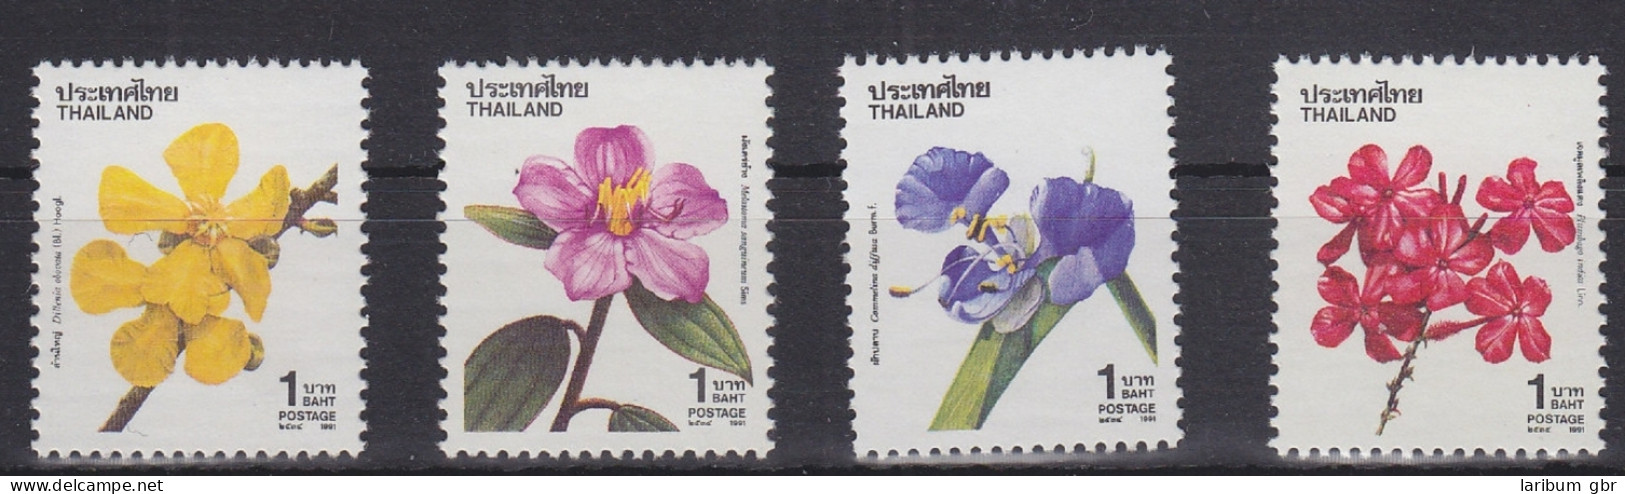 Thailand 1443-1446 Postfrisch Natur Blumen, MNH #RA172 - Tailandia